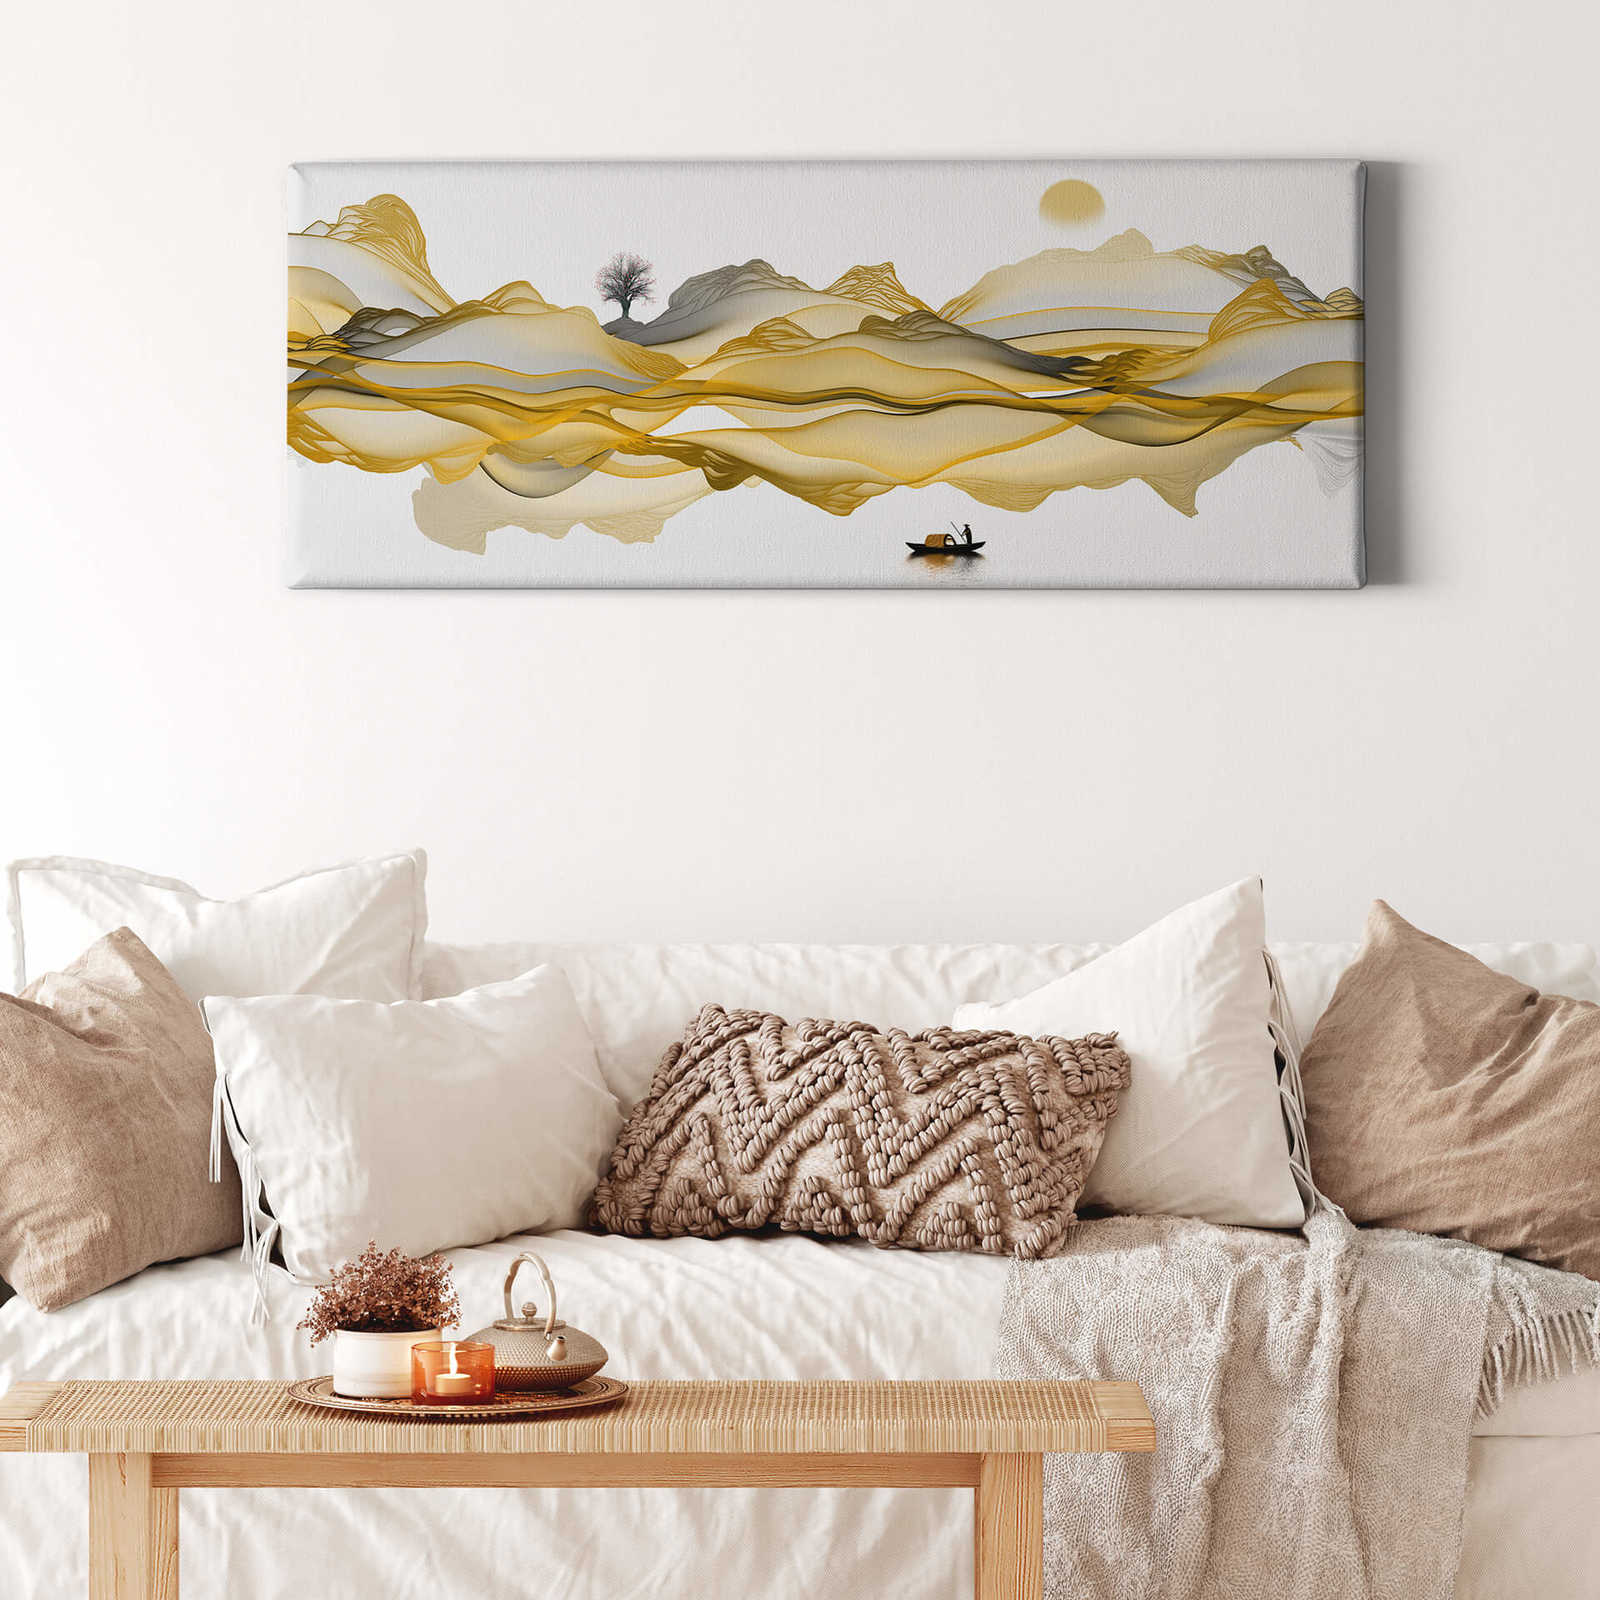             Tableau toile panoramique paysage abstrait or, gris - 1,00 m x 0,40 m
        